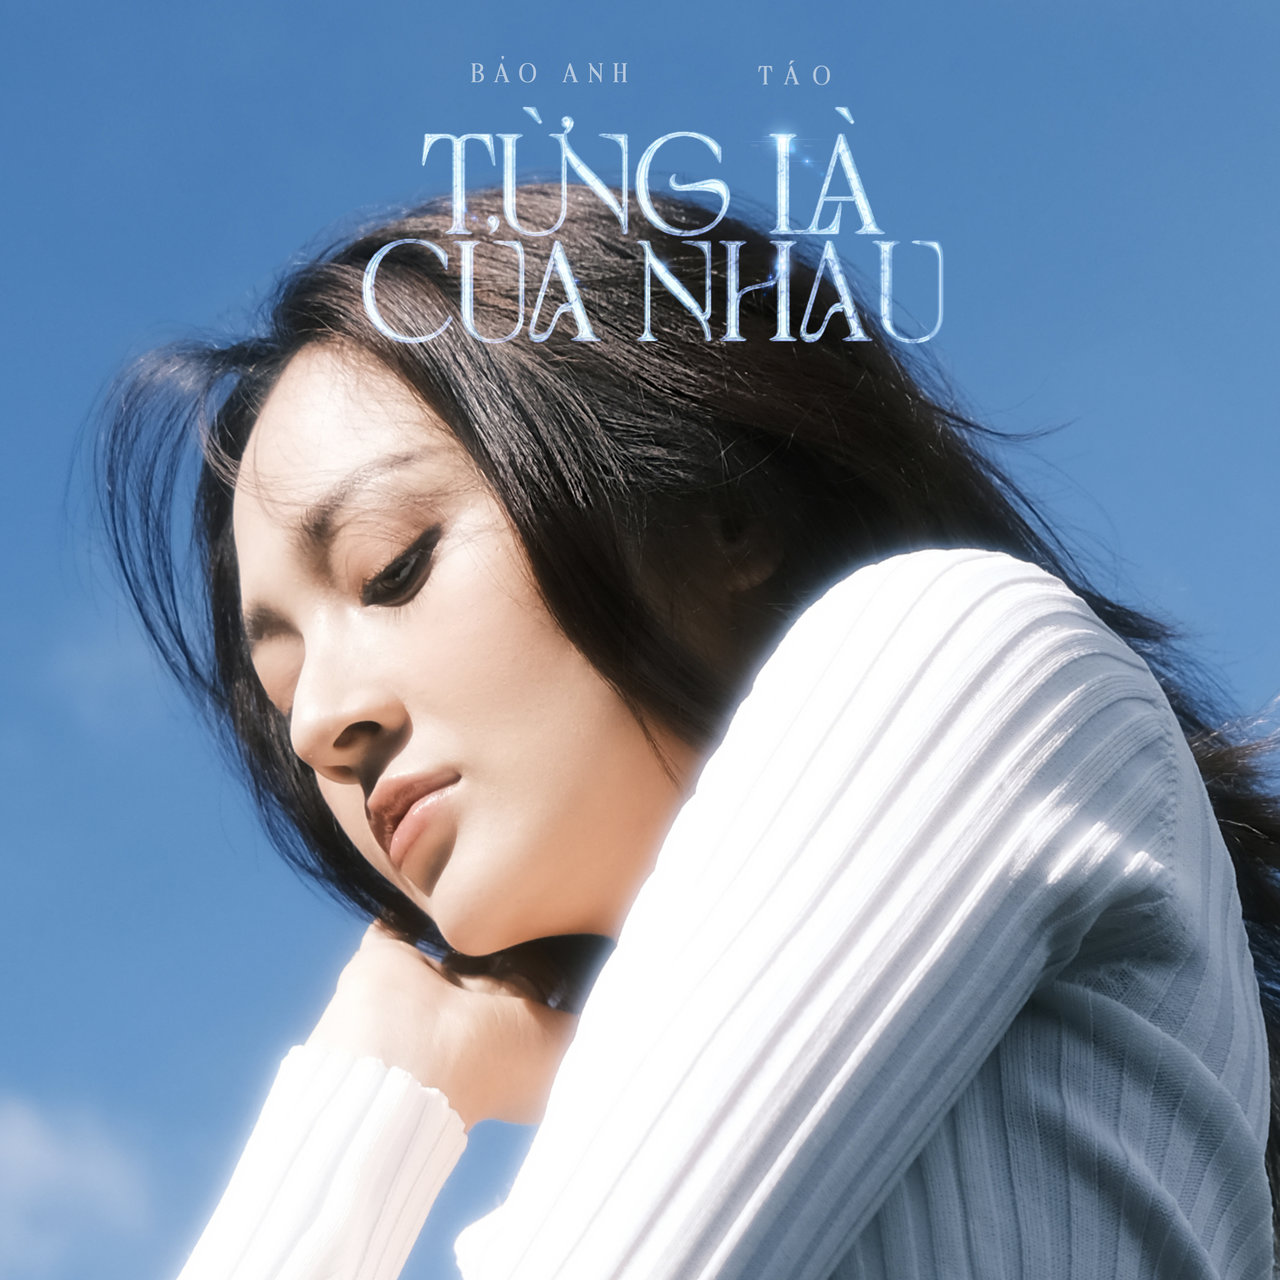 Bảo Anh ft. featuring Táo Từng Là Của Nhau cover artwork